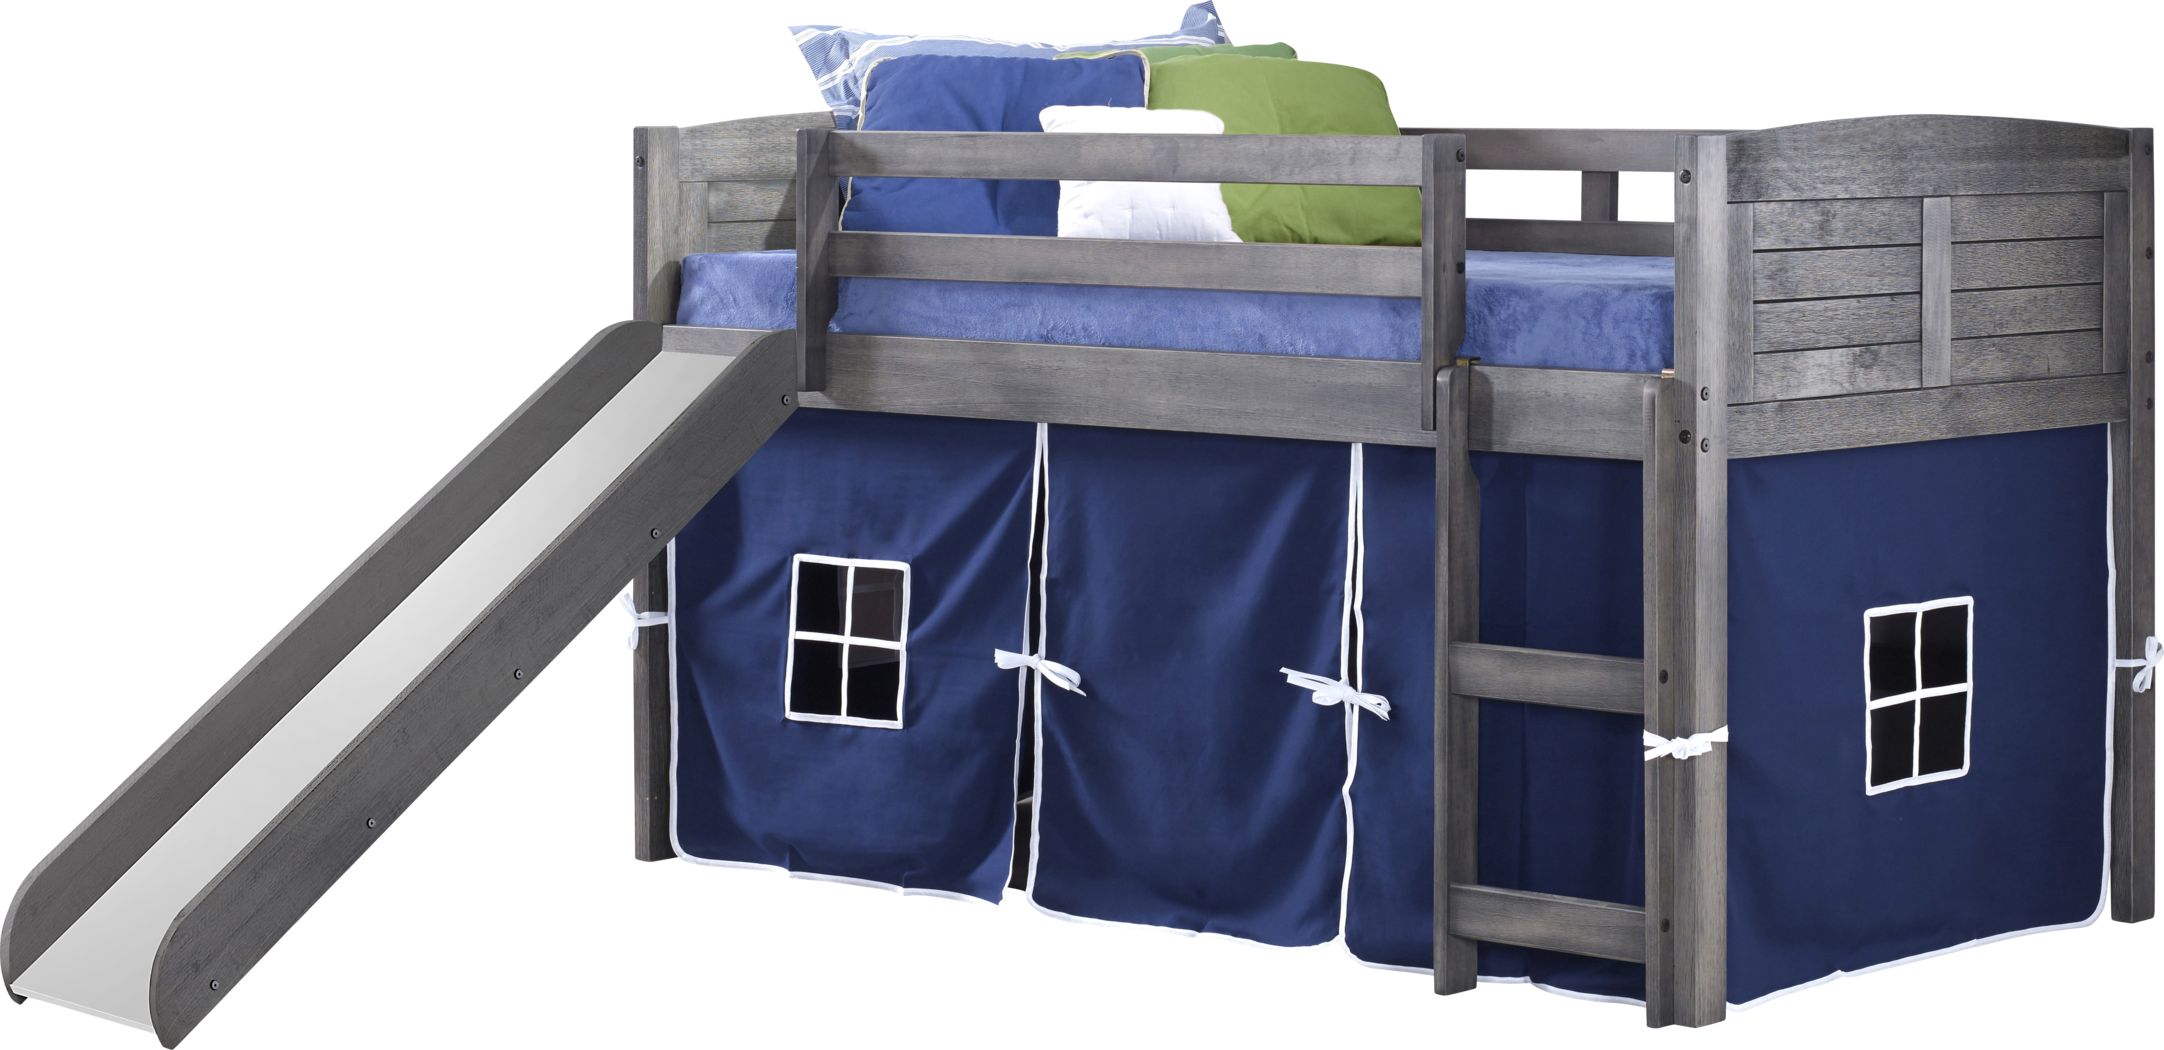 Bunk Beds For Kids, Hideaway Bunk Beds